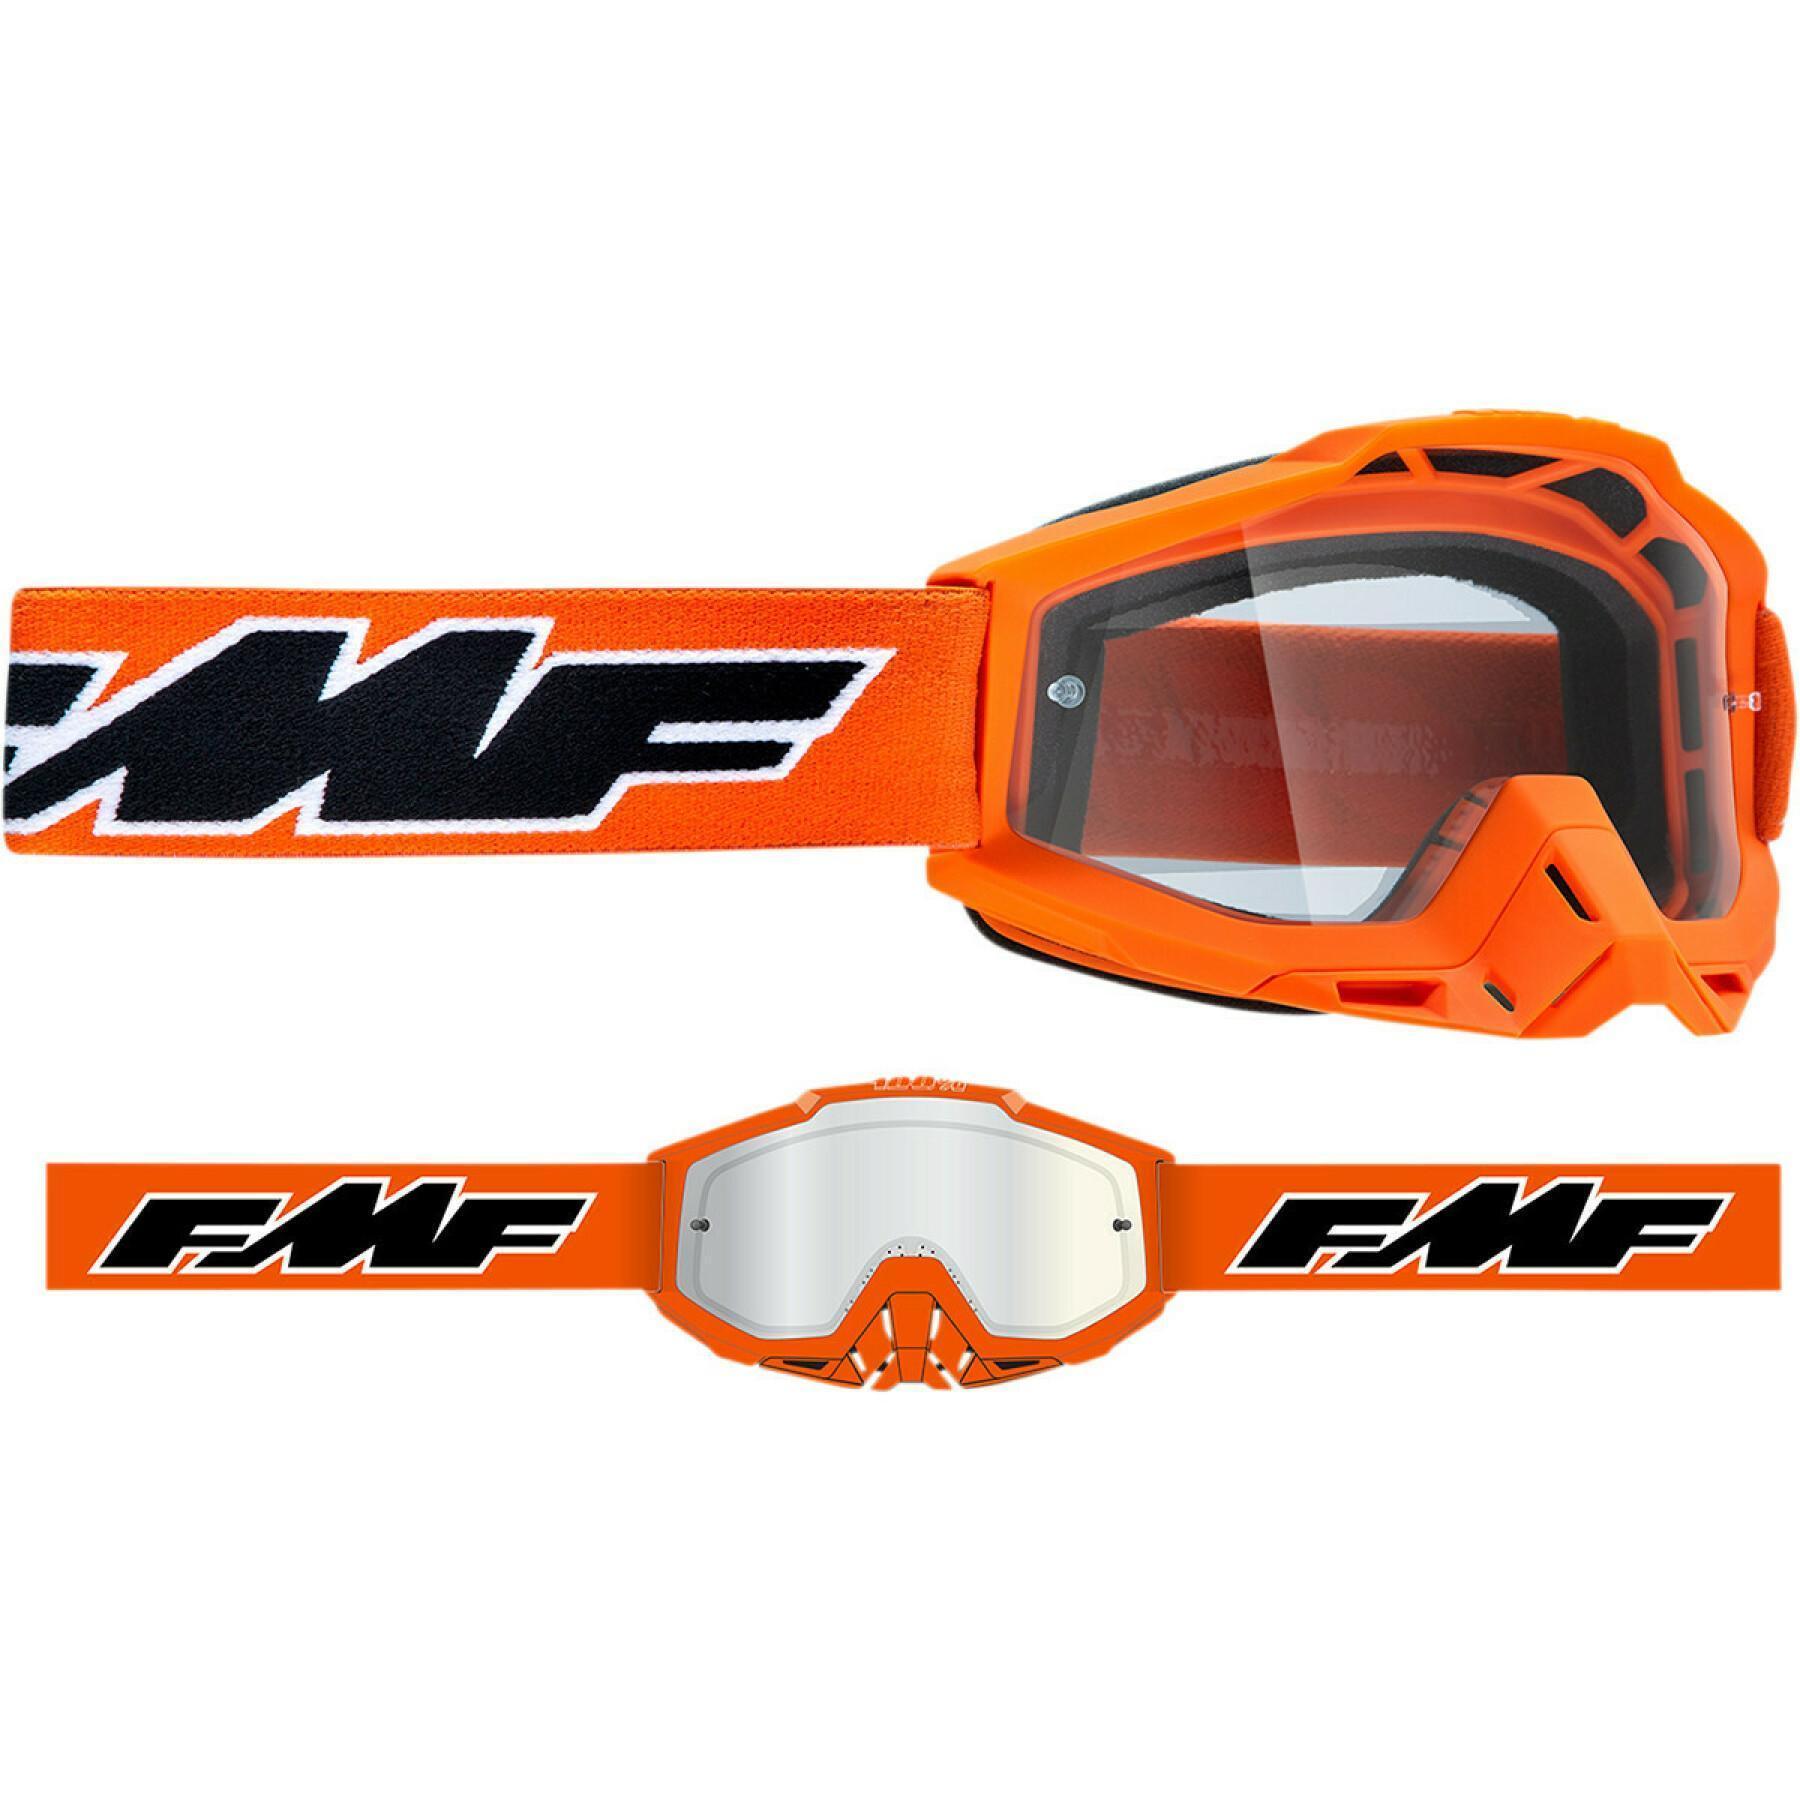 Motorrad-Crossbrille FMF Vision otg rocket